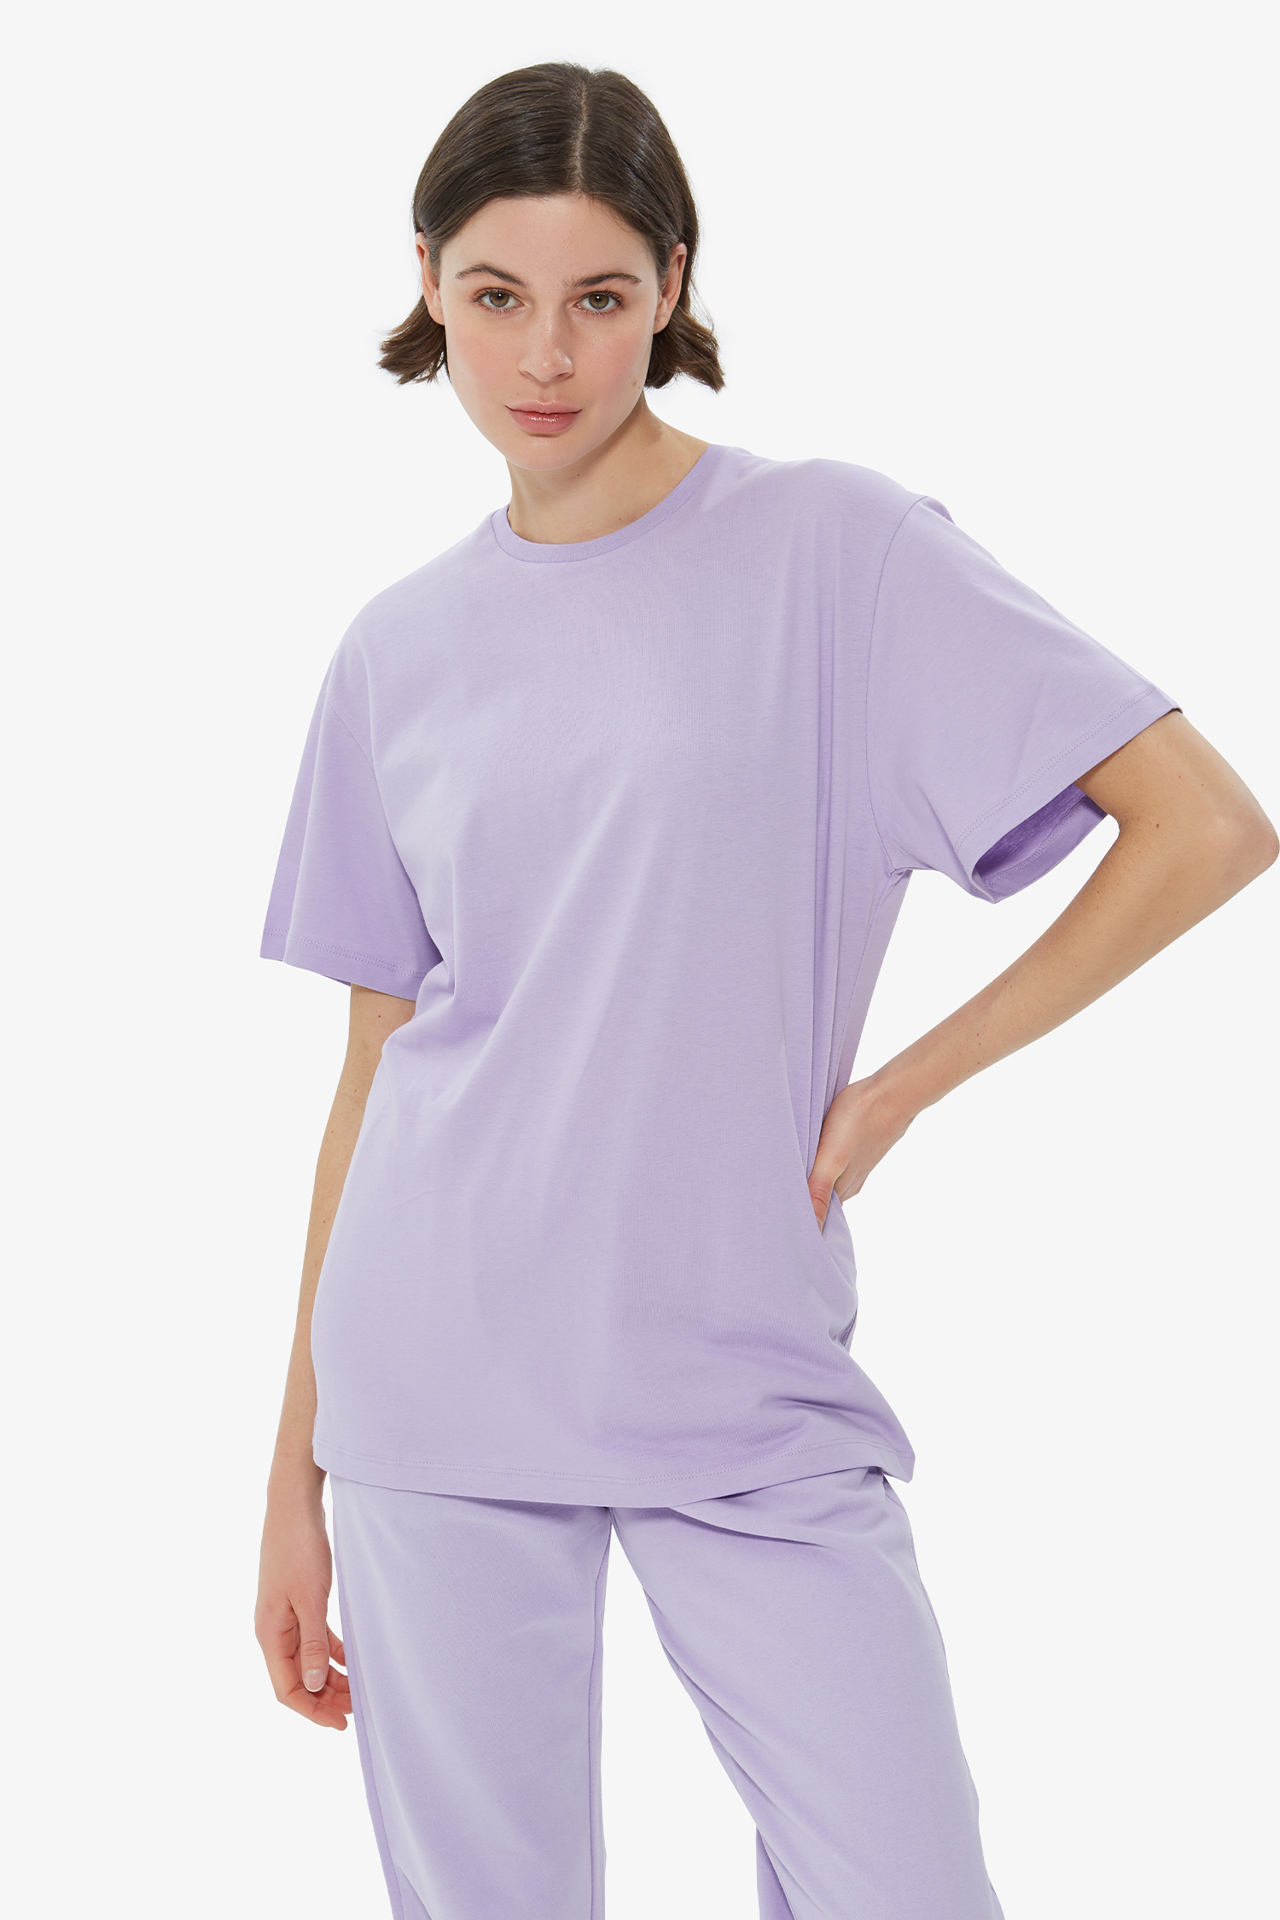 Dahlia Bianca | T-Shirt Printed Back - Lilac - Tshirt